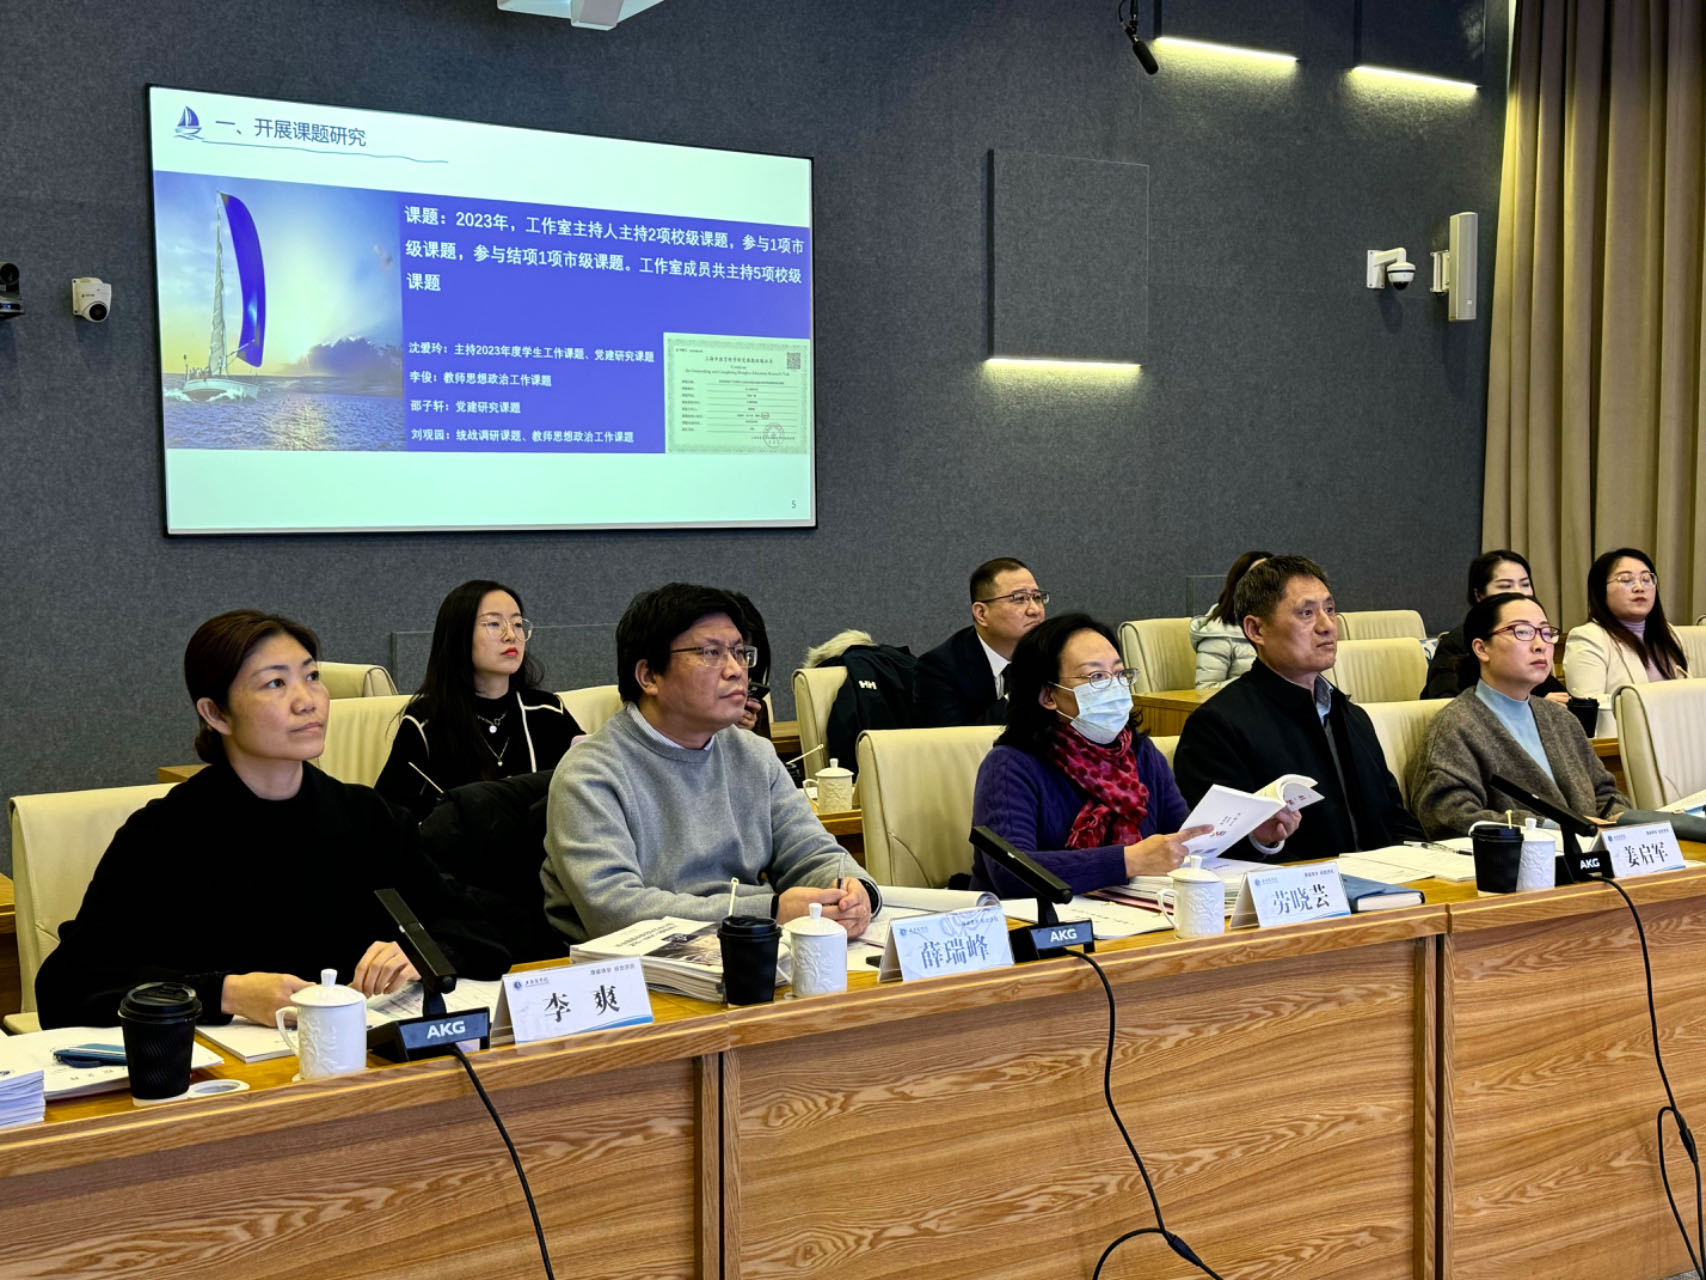 上海商学院召开上海商学院第三期辅导员工作室建设推进会